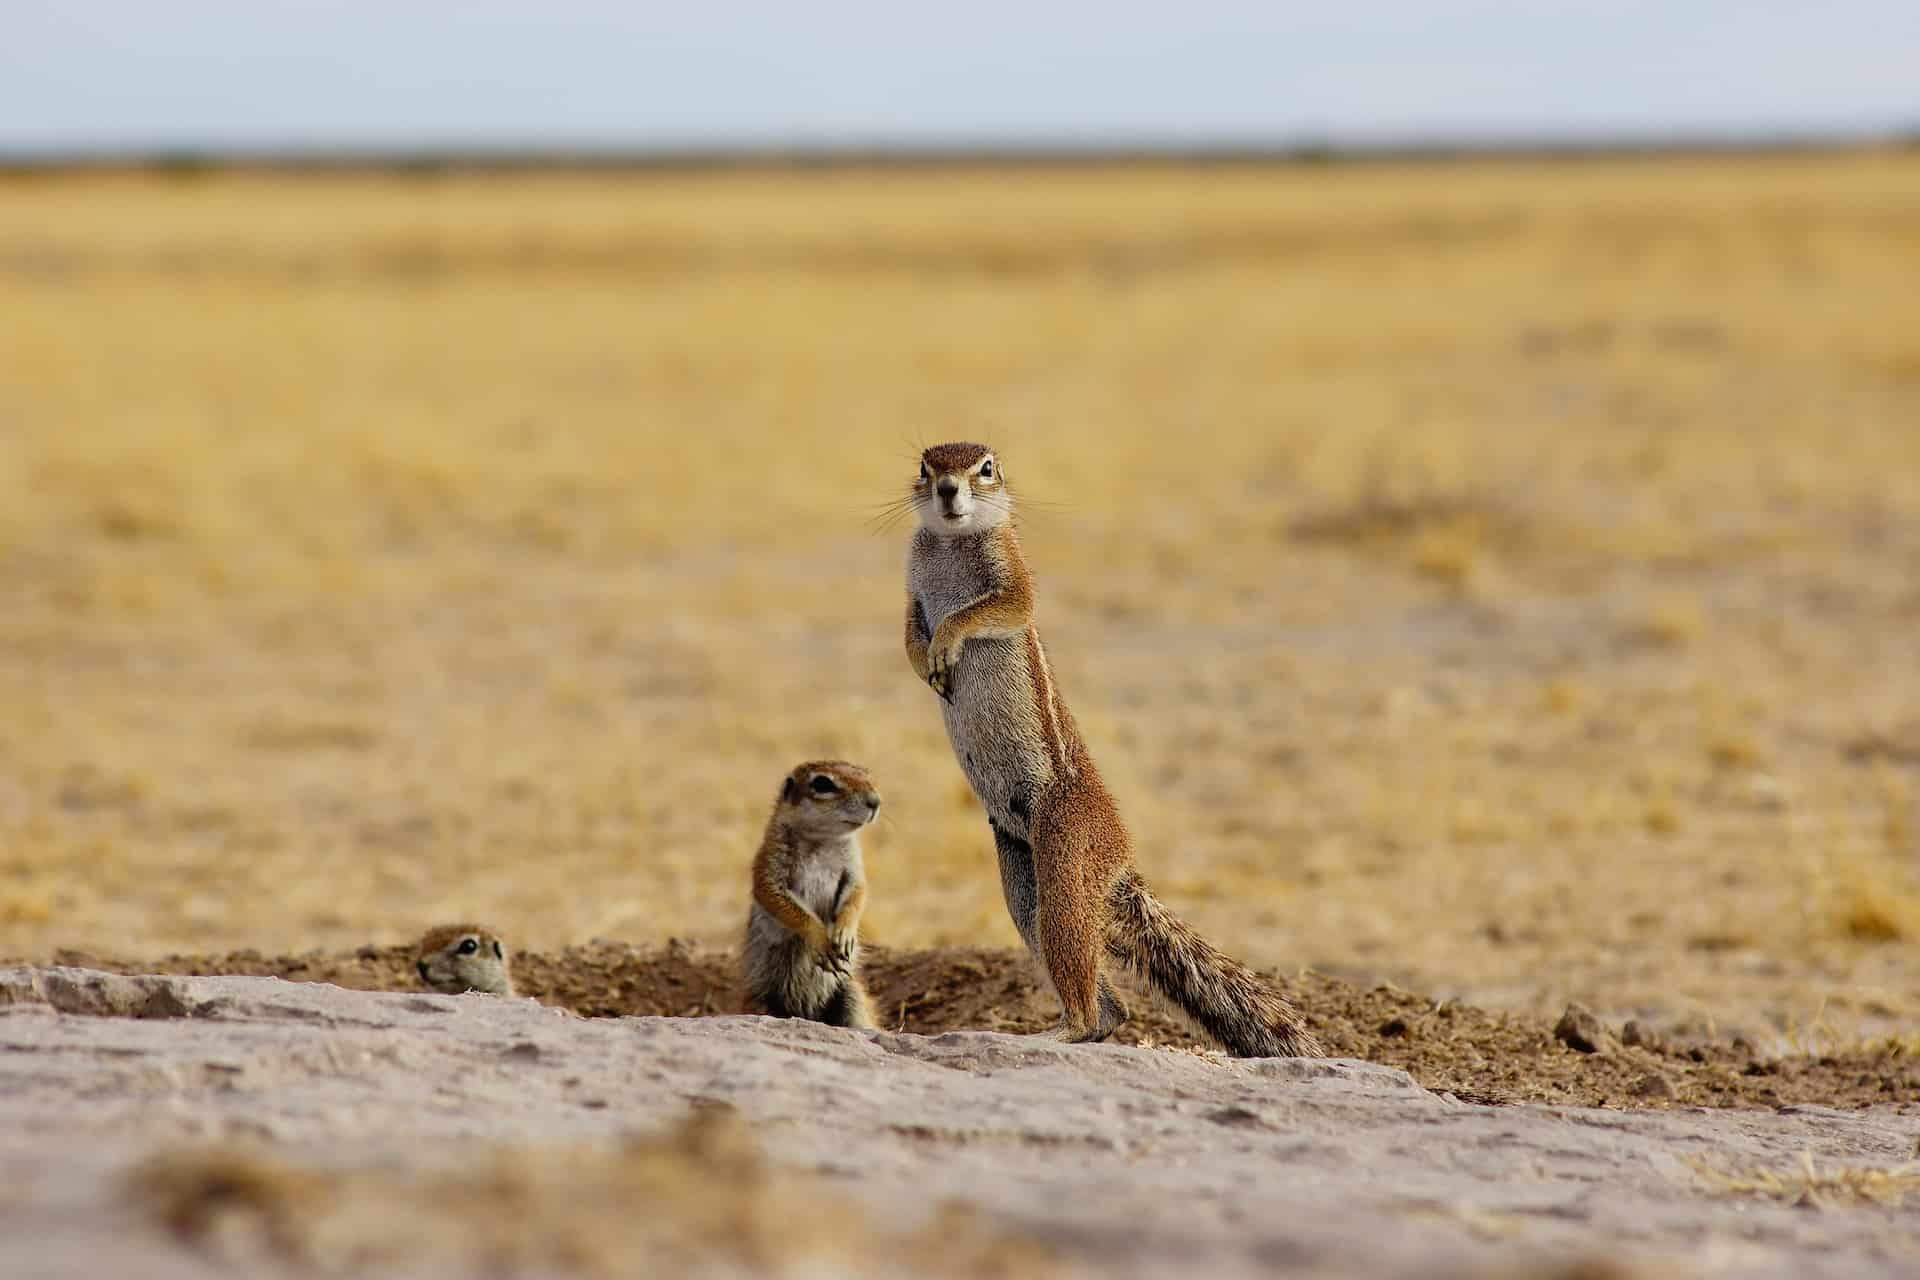 Drei kleine Hörnchen-Tiere in einer flachen, braunen Landschaft, eines steht aufrecht und schaut in die Kamera, zwei weitere sind halb in einem Loch in der Erde versteckt. Foto: Leon Pauleikhoff via Unsplash